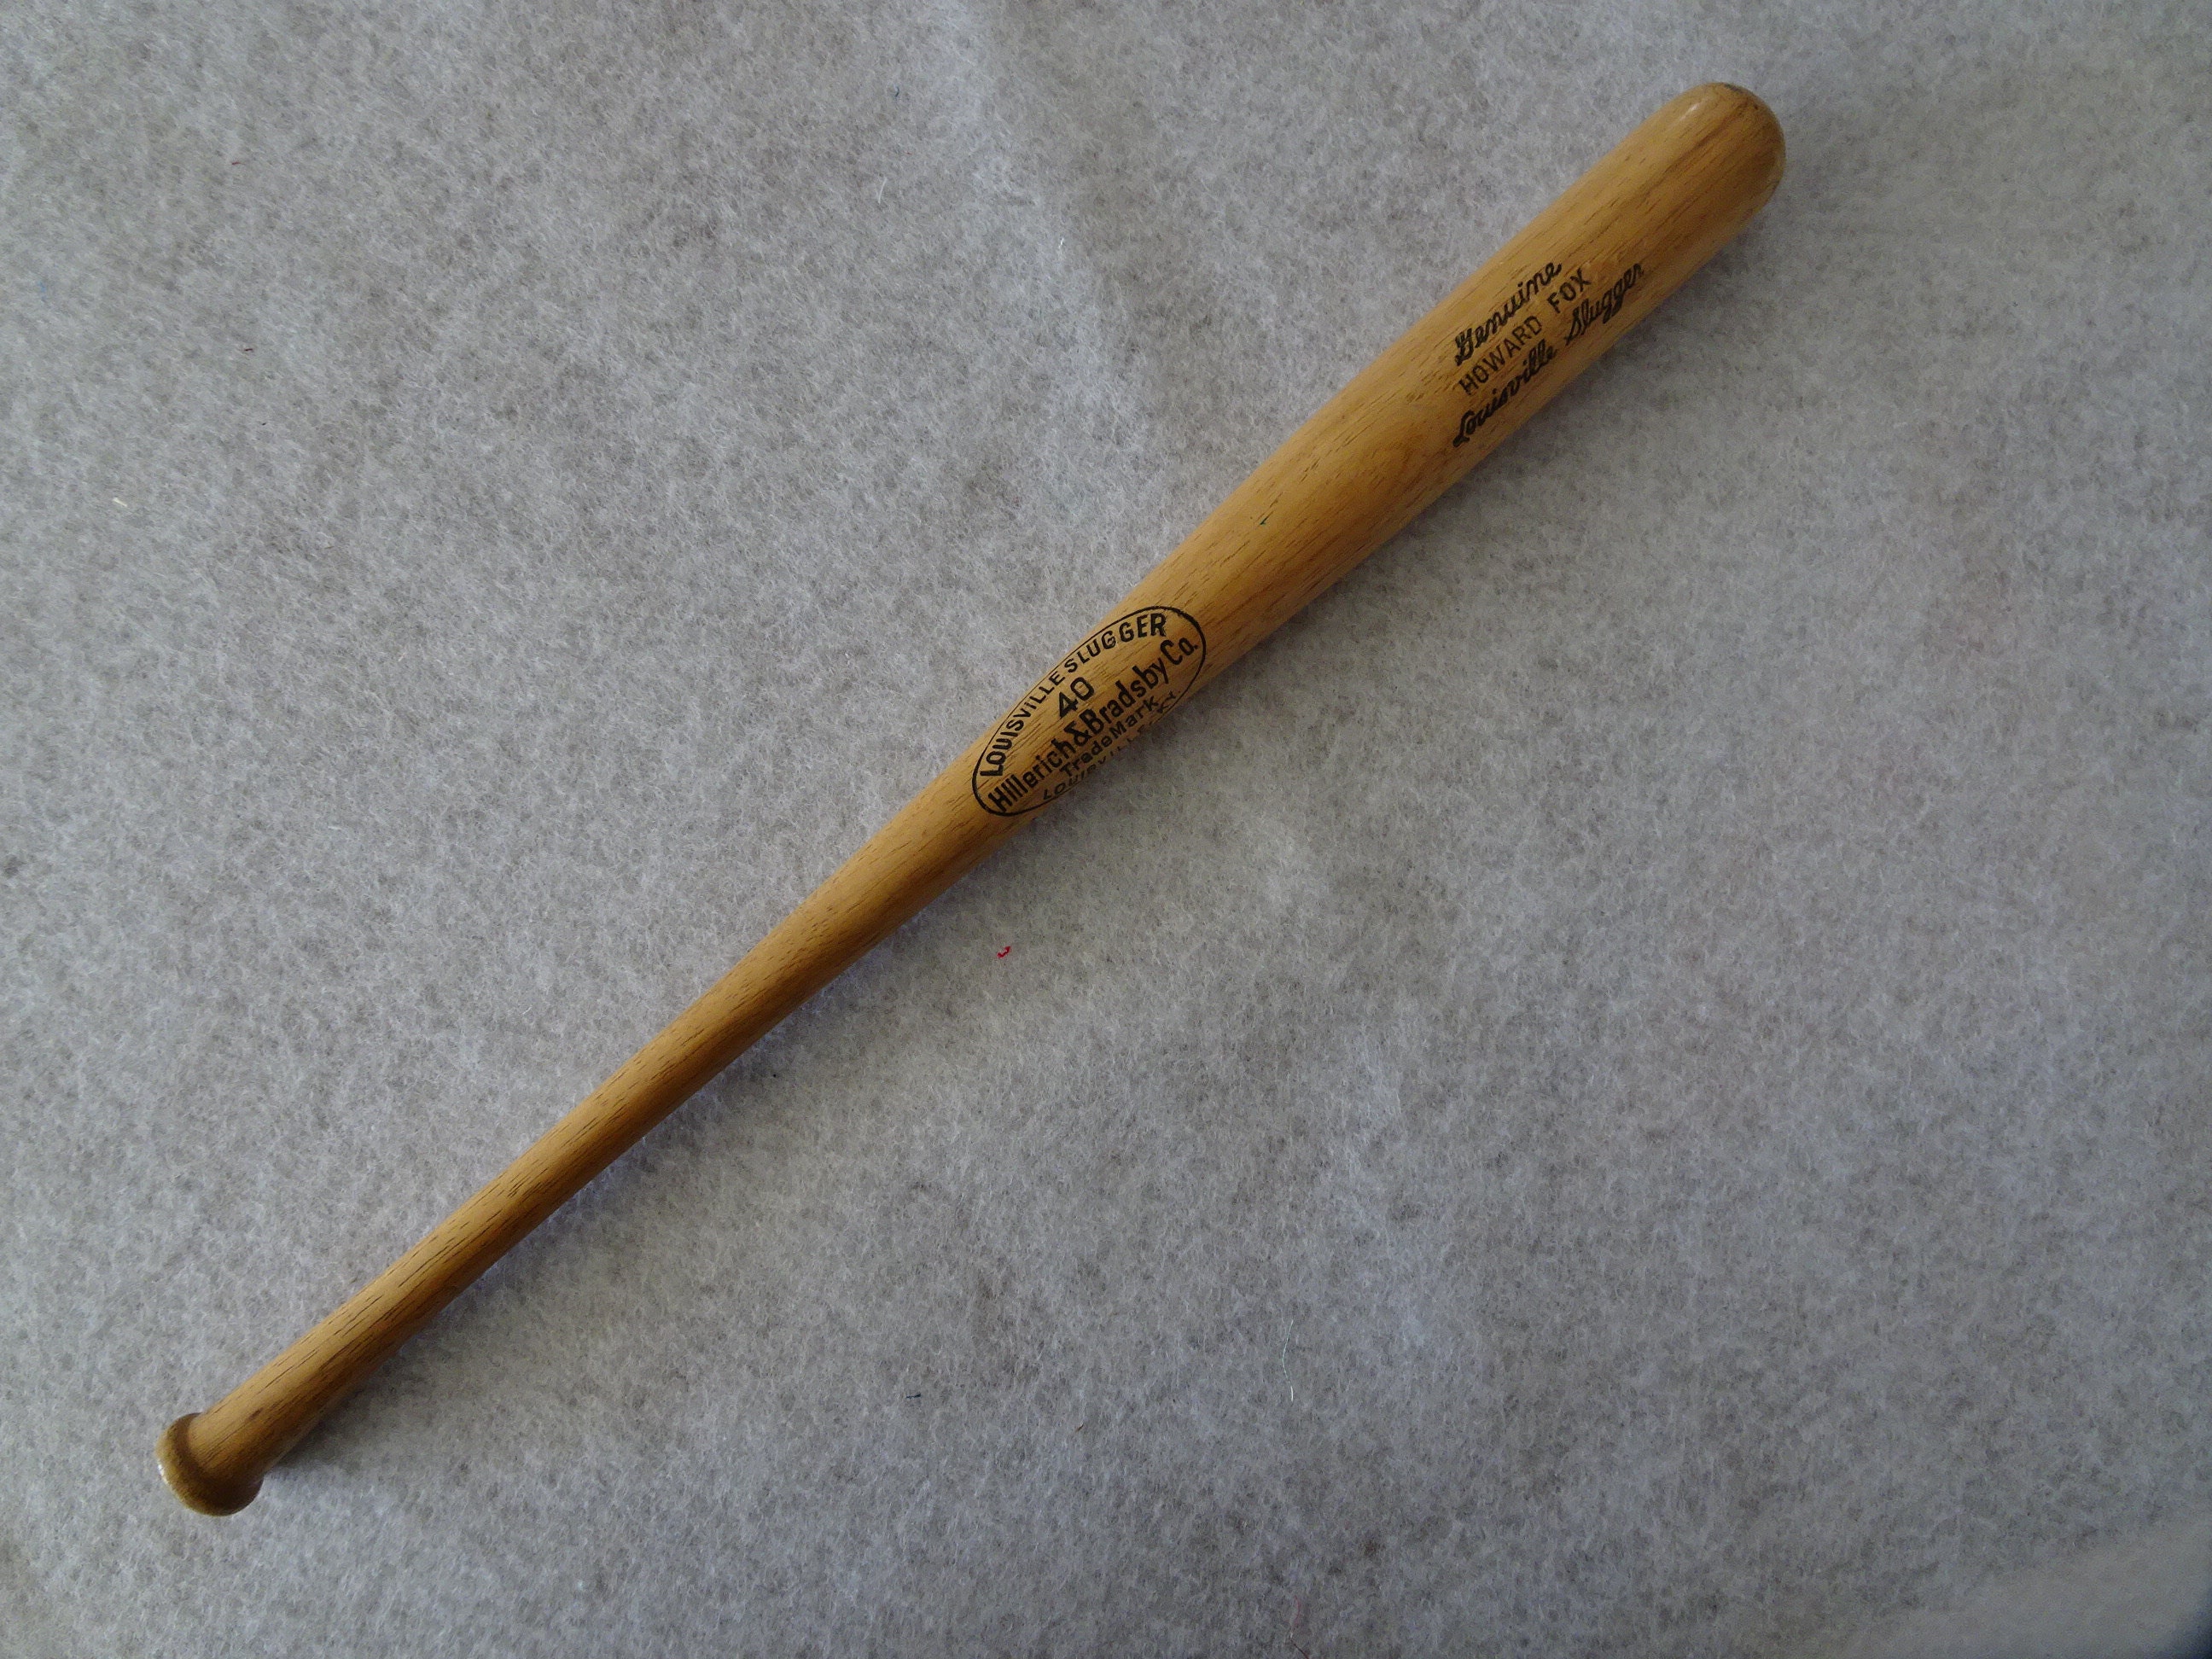 Vintage Miniature Louisville Slugger 125 Wood Baseball Bat 